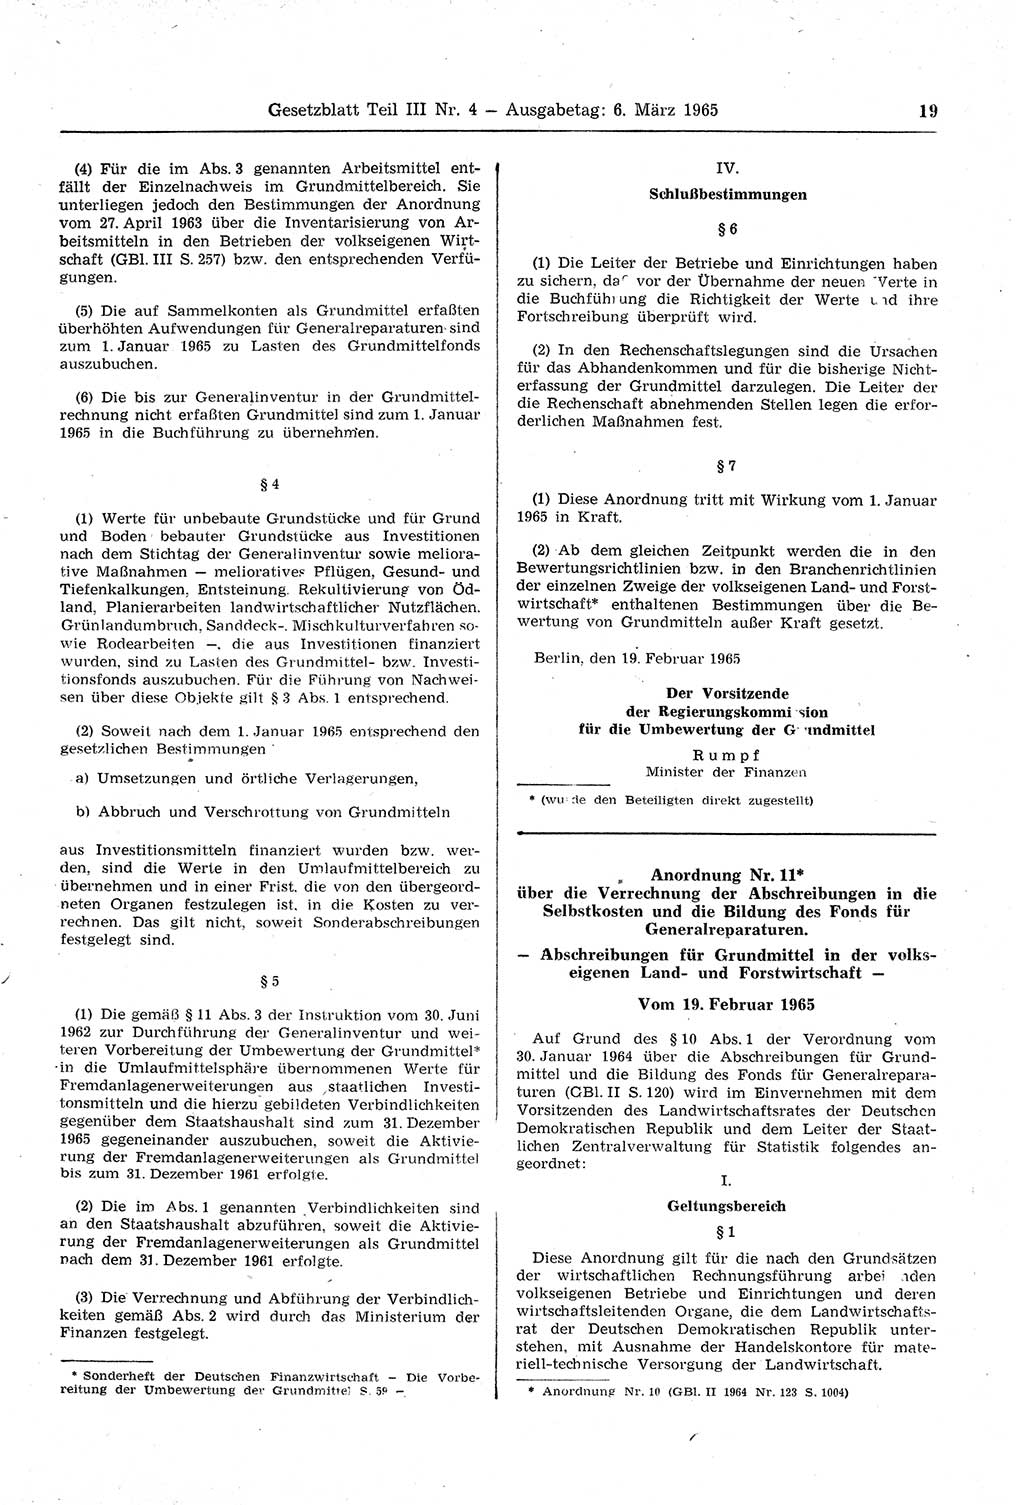 Gesetzblatt (GBl.) der Deutschen Demokratischen Republik (DDR) Teil ⅠⅠⅠ 1965, Seite 19 (GBl. DDR ⅠⅠⅠ 1965, S. 19)